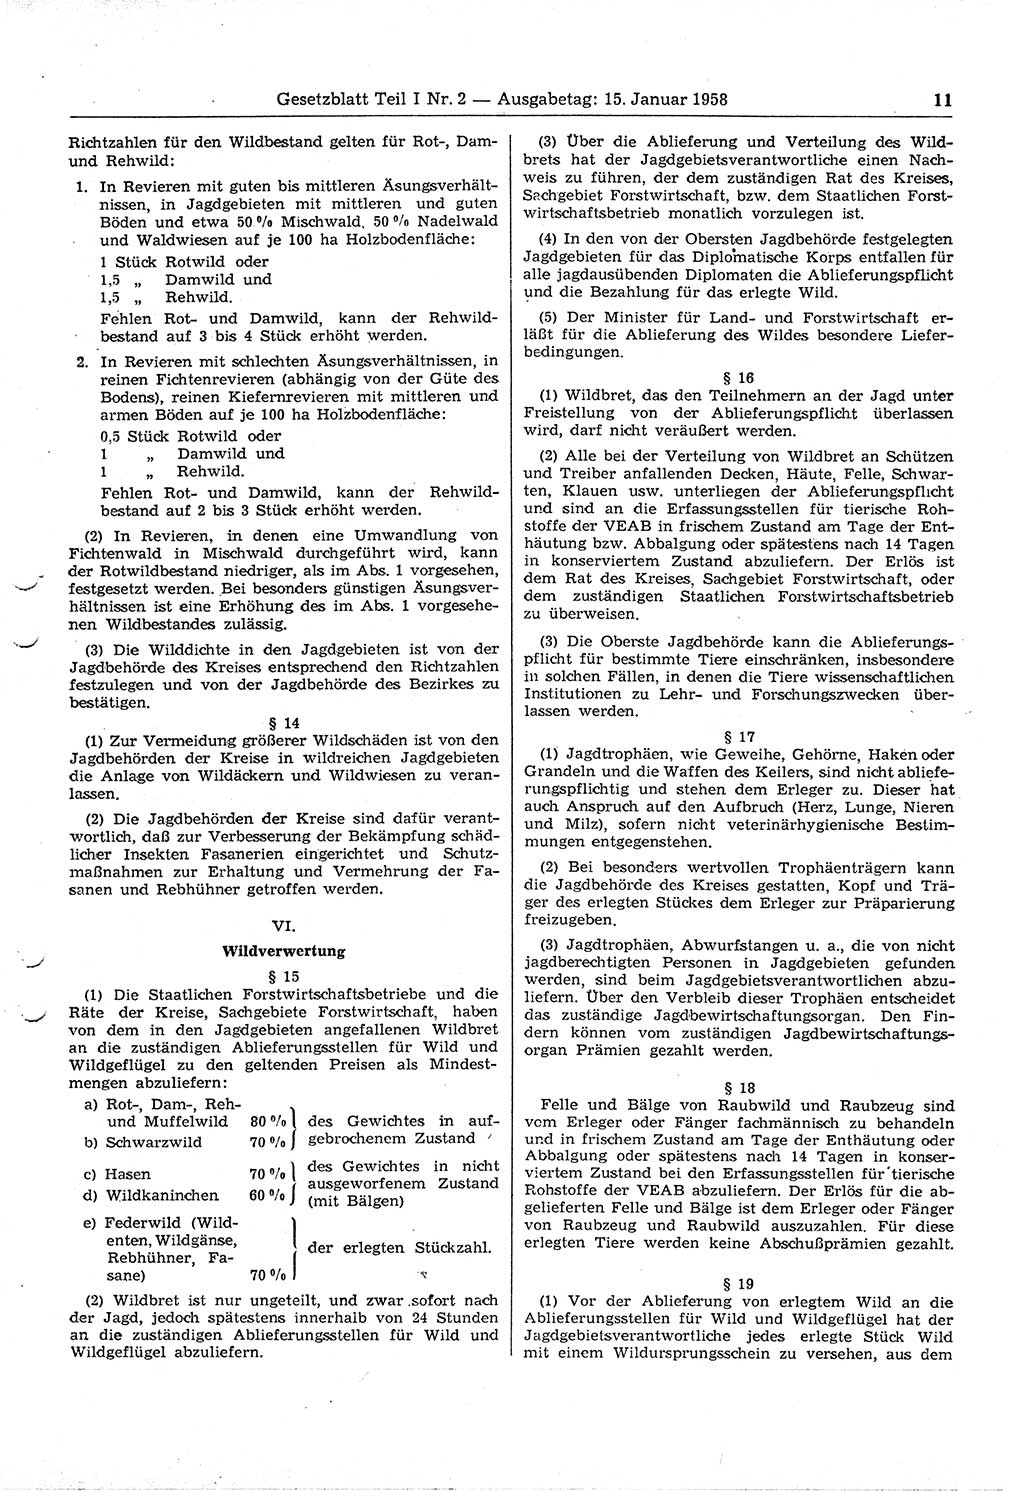 Gesetzblatt (GBl.) der Deutschen Demokratischen Republik (DDR) Teil Ⅰ 1958, Seite 11 (GBl. DDR Ⅰ 1958, S. 11)